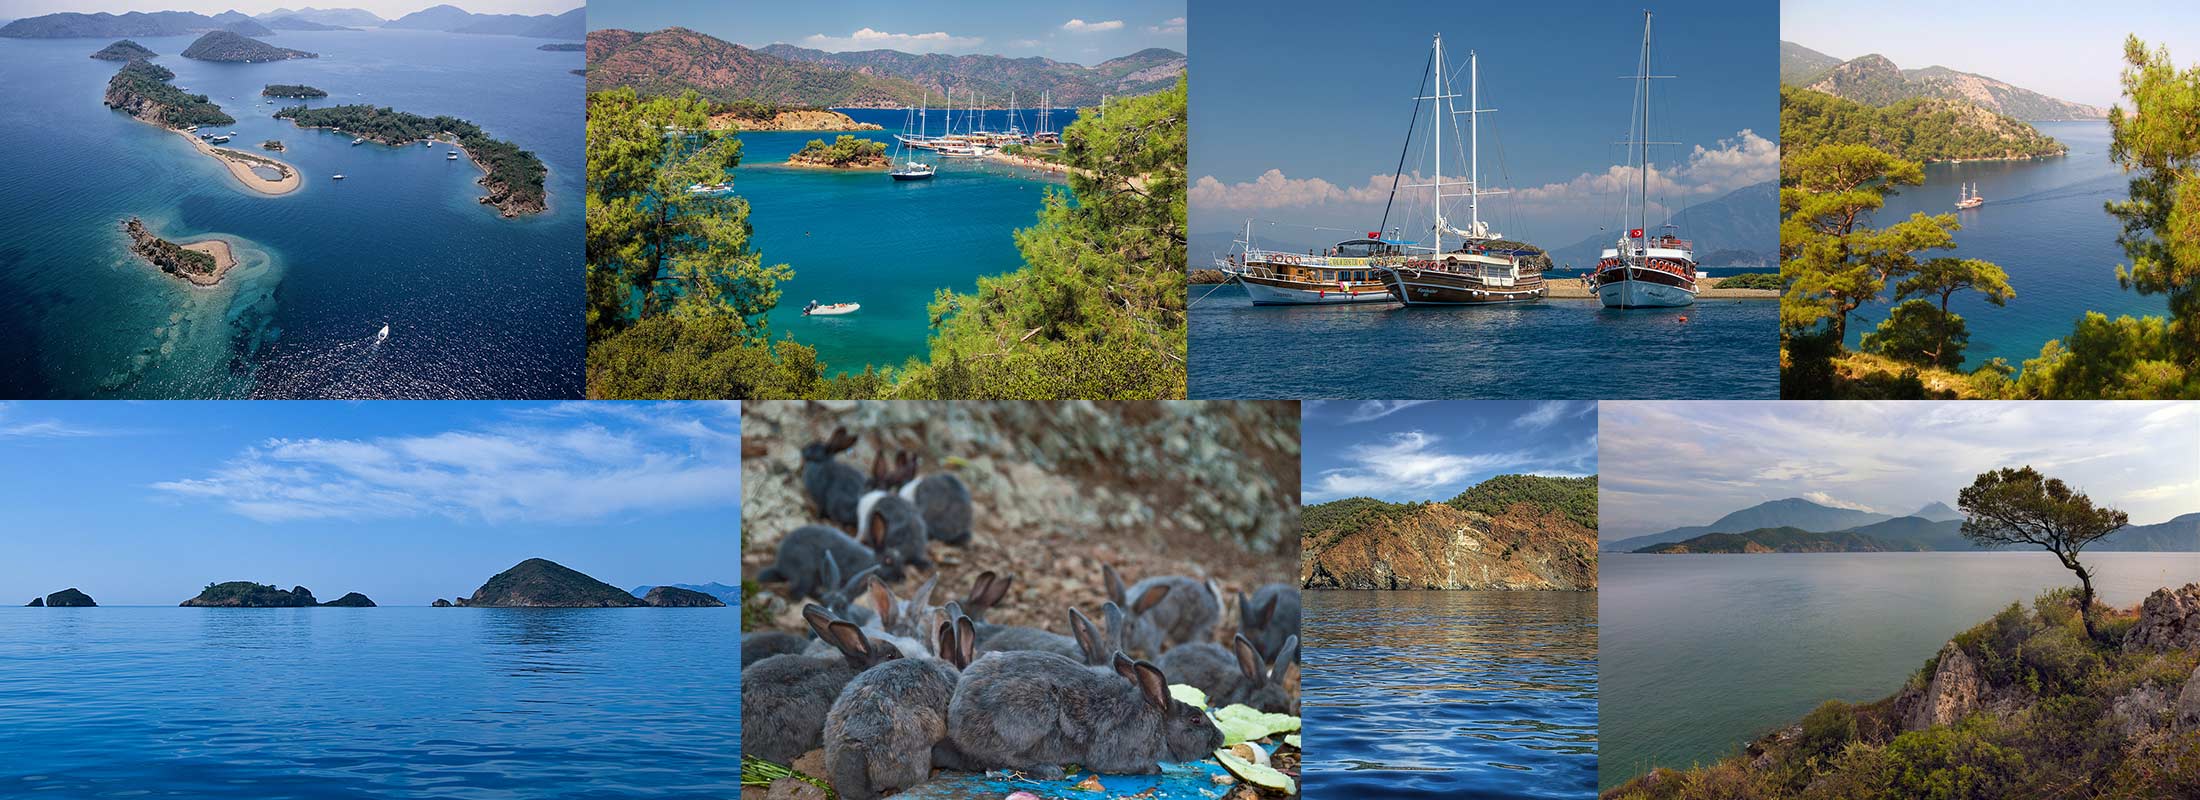 daily-12-islands-blue-cruise-oludeniz-fethiye-turkey